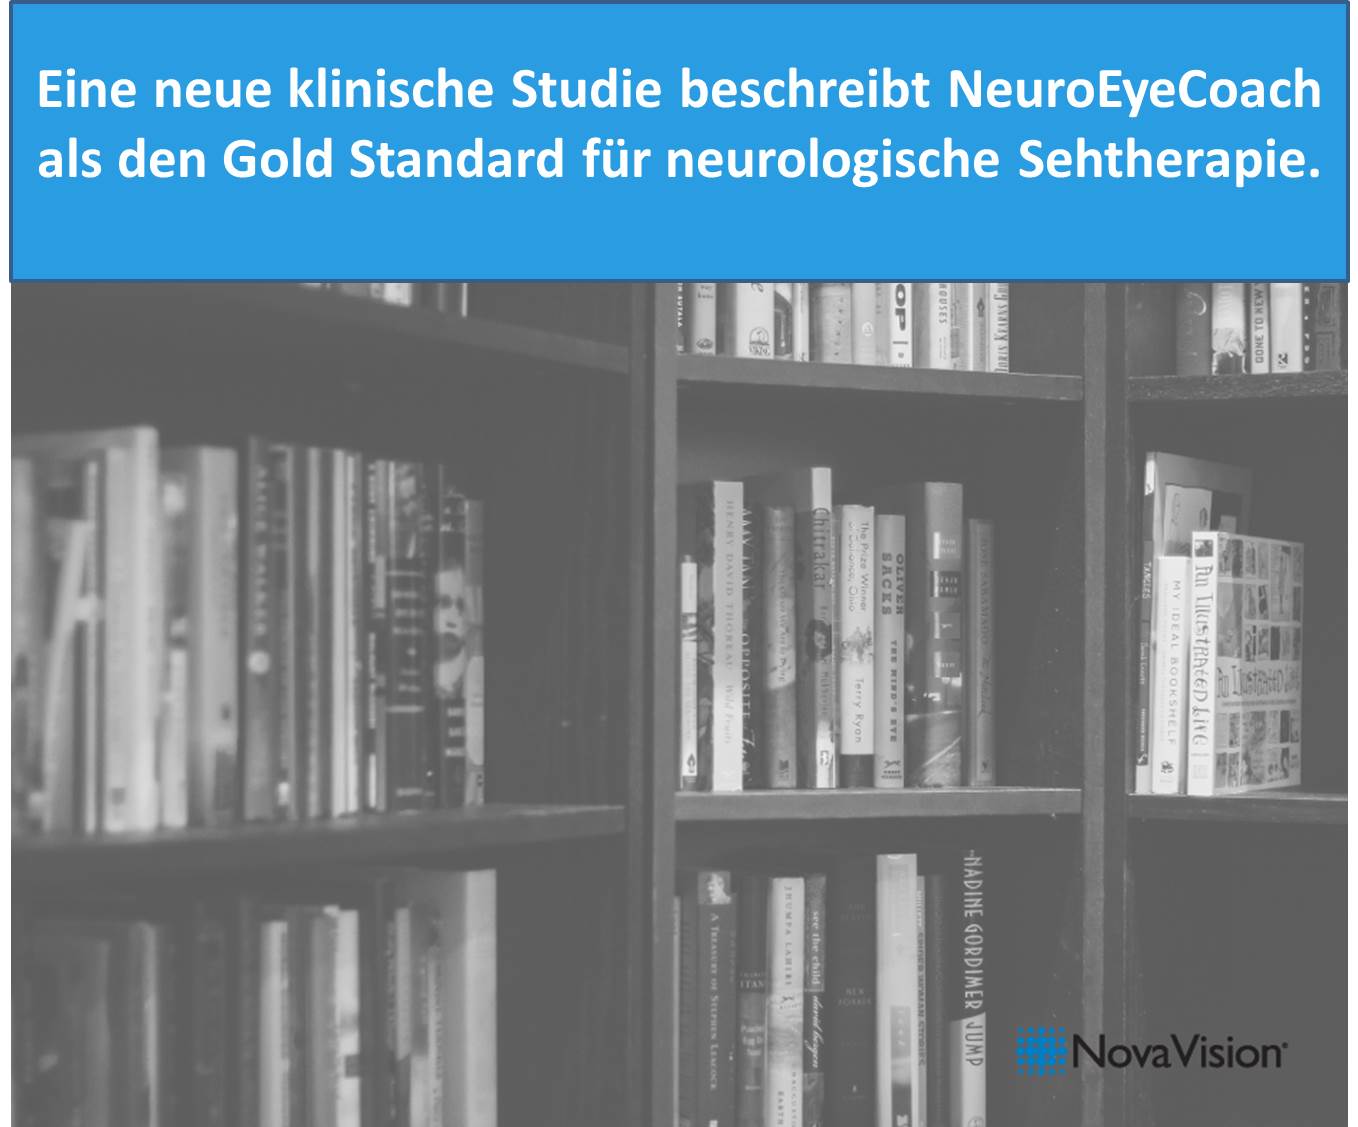 neue Studie beschreibt NeuroEyeCoach als Gold Standard für neurologische Sehtherapie